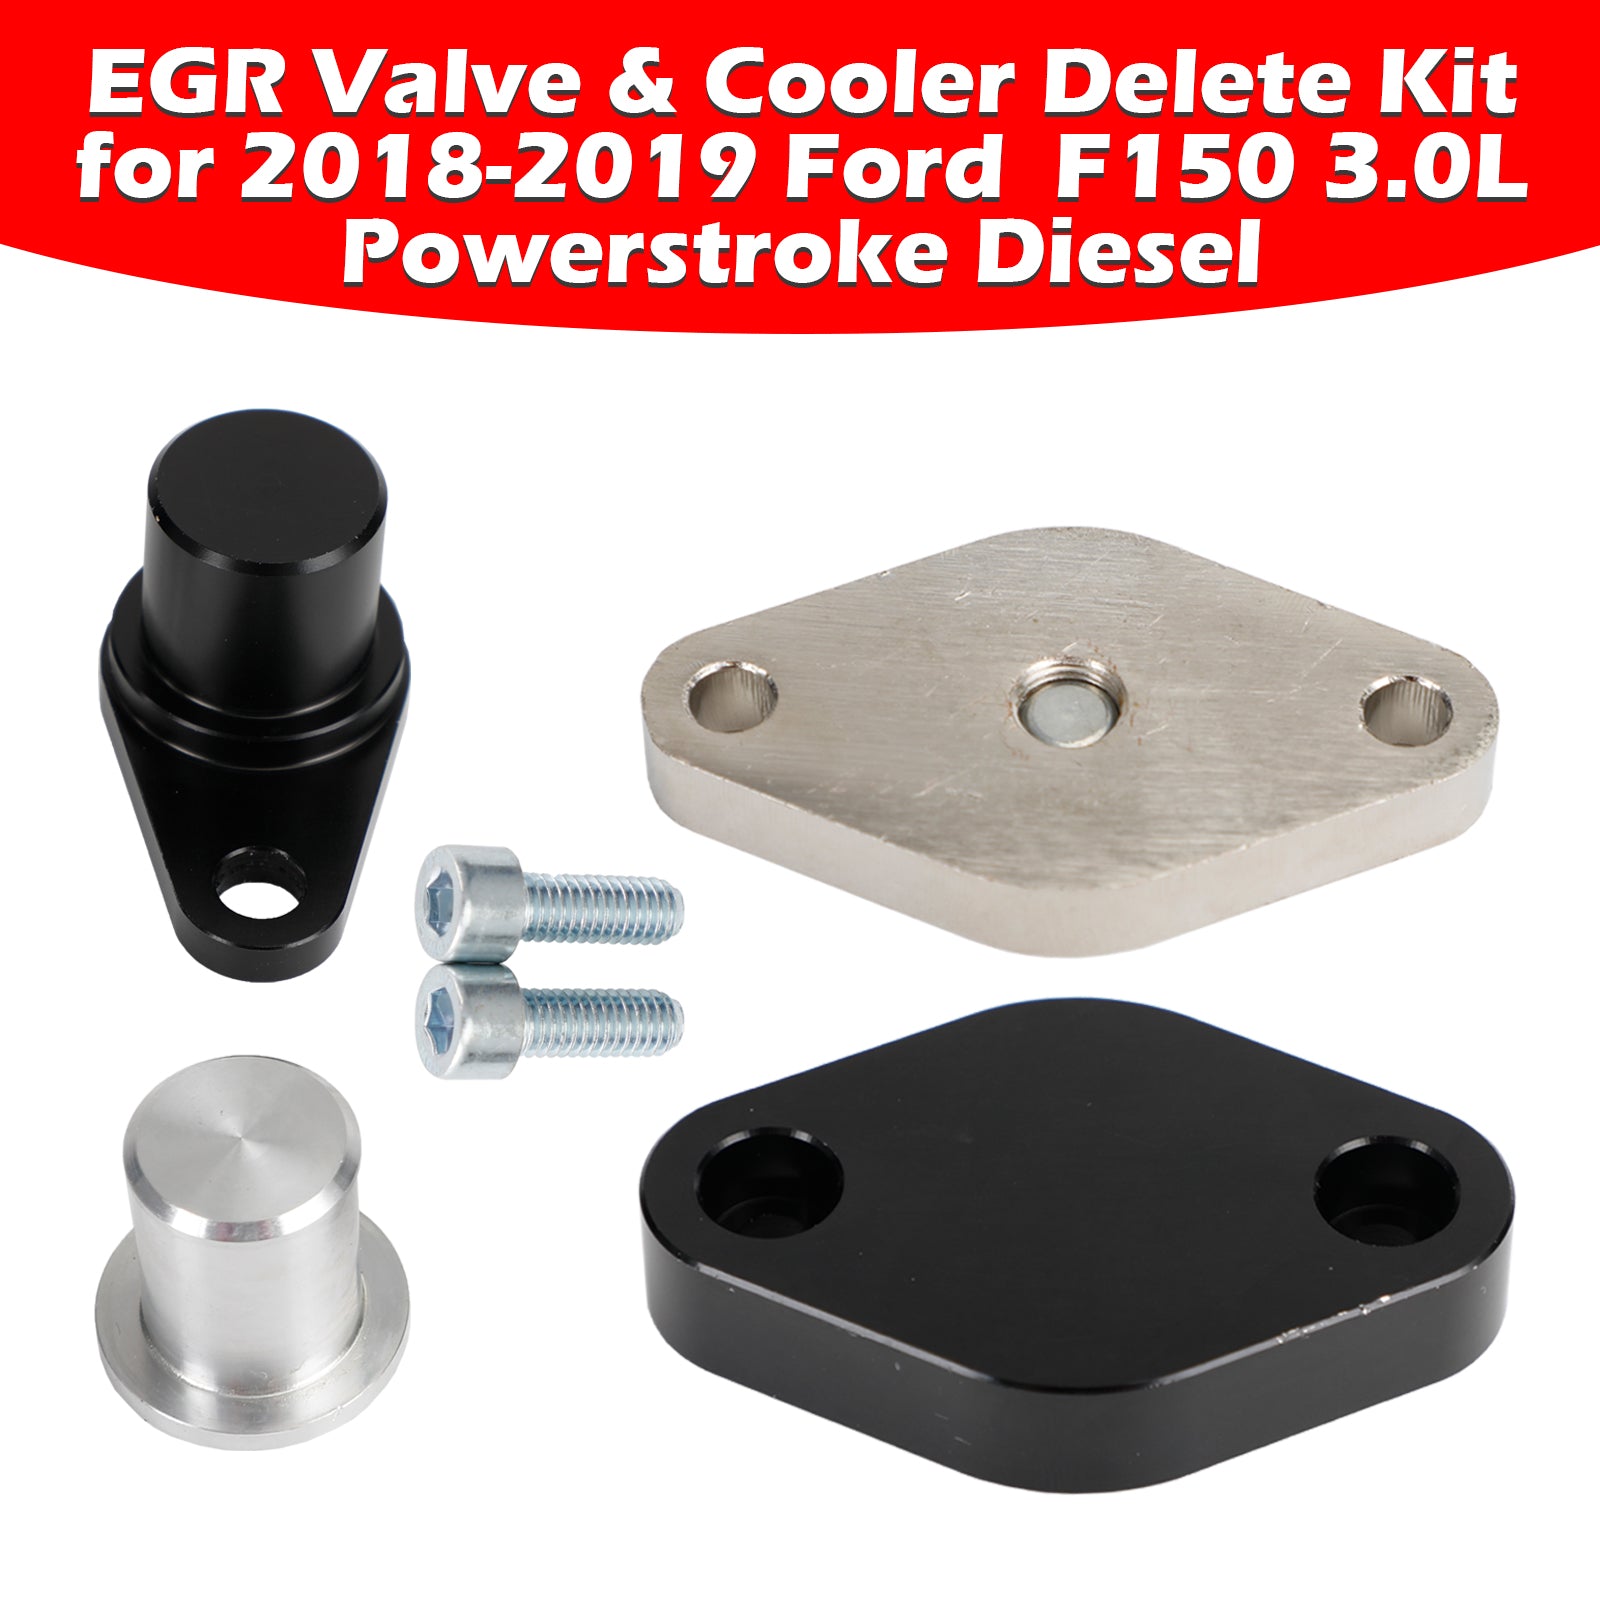 Ford 2018-2019 F150 3.0L Powerstroke Diesel EGR Valve & Cooler Delete Kit